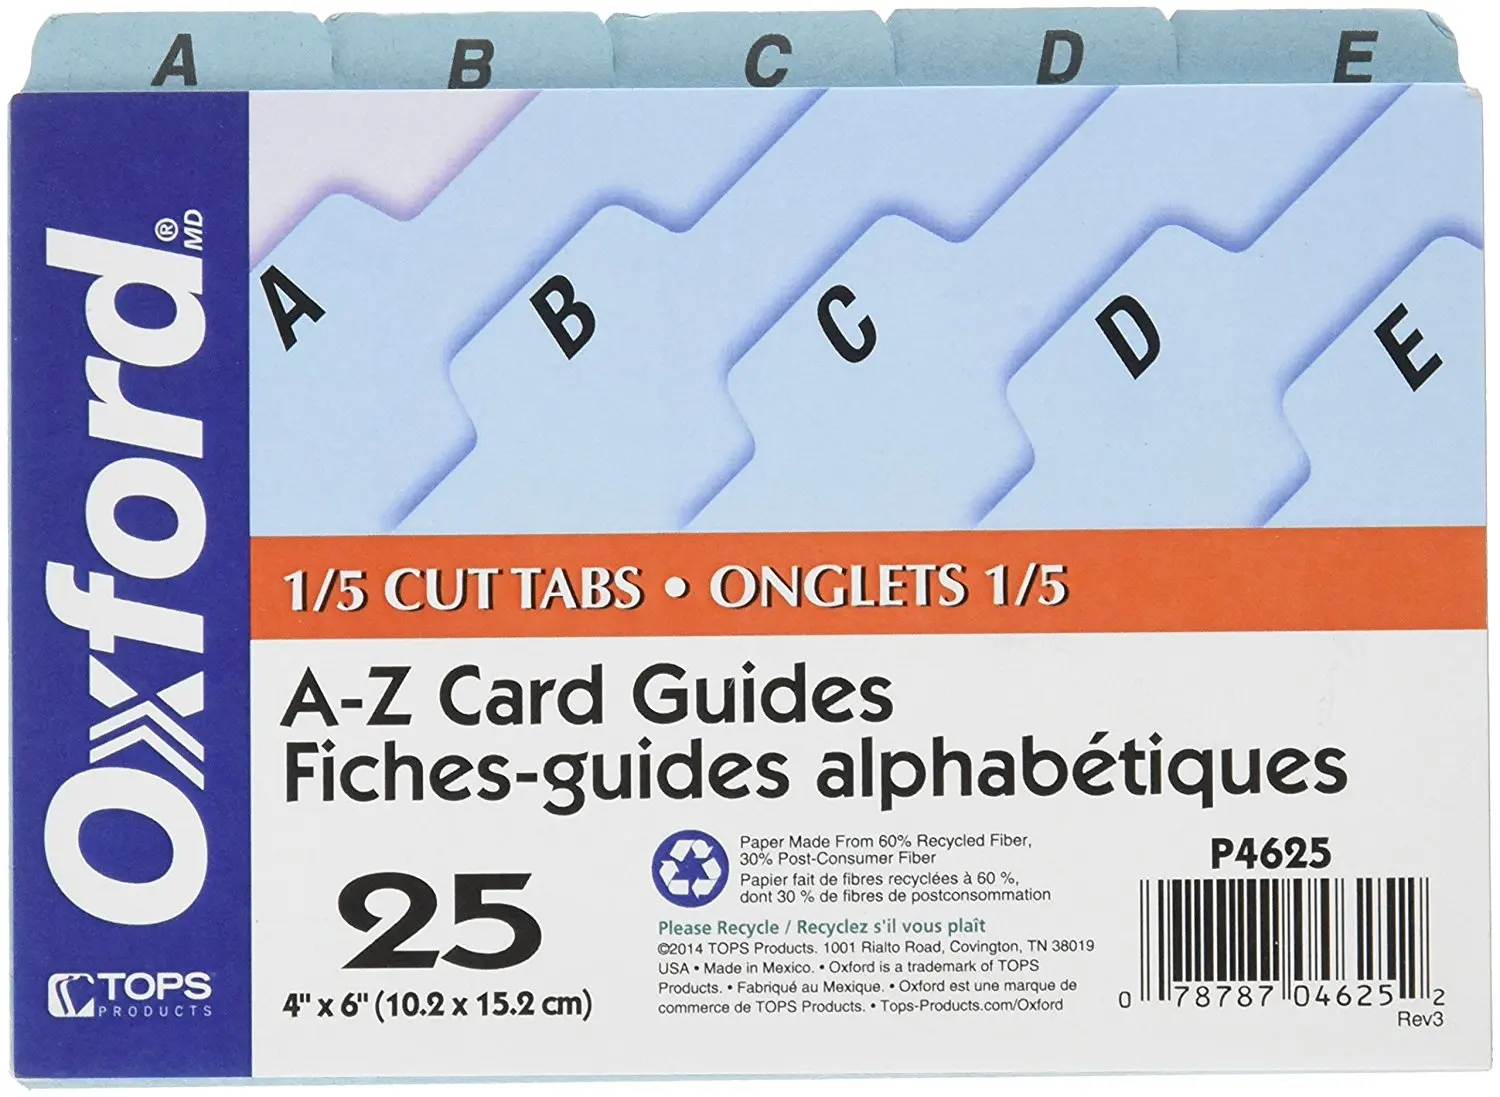 Carding guide. Tabs карты. Index Card 4x6. Pocket Jotter Index Card Holder a6 Size. Index Cards.